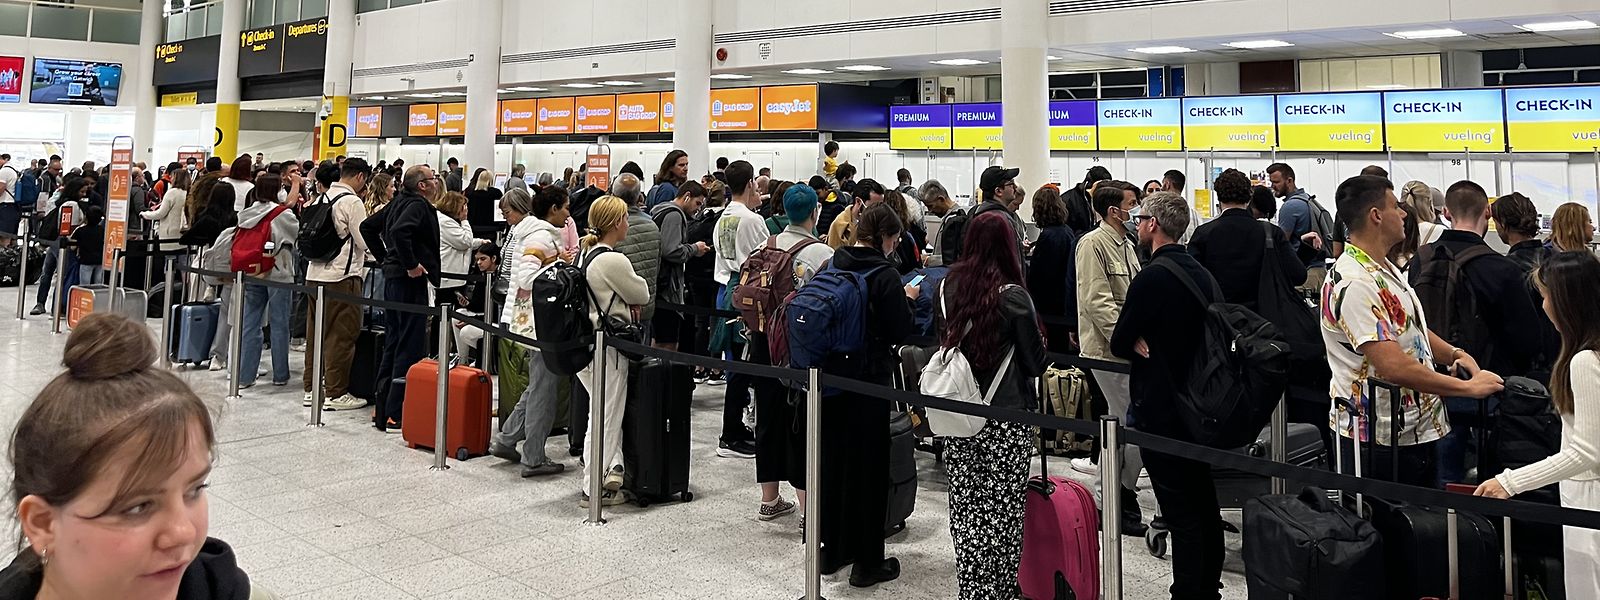 London: Passagiere stehen in Warteschlangen am Flughafen Gatwick im South Terminal. Mehr als 150 britische Flüge wurden gestrichen. 